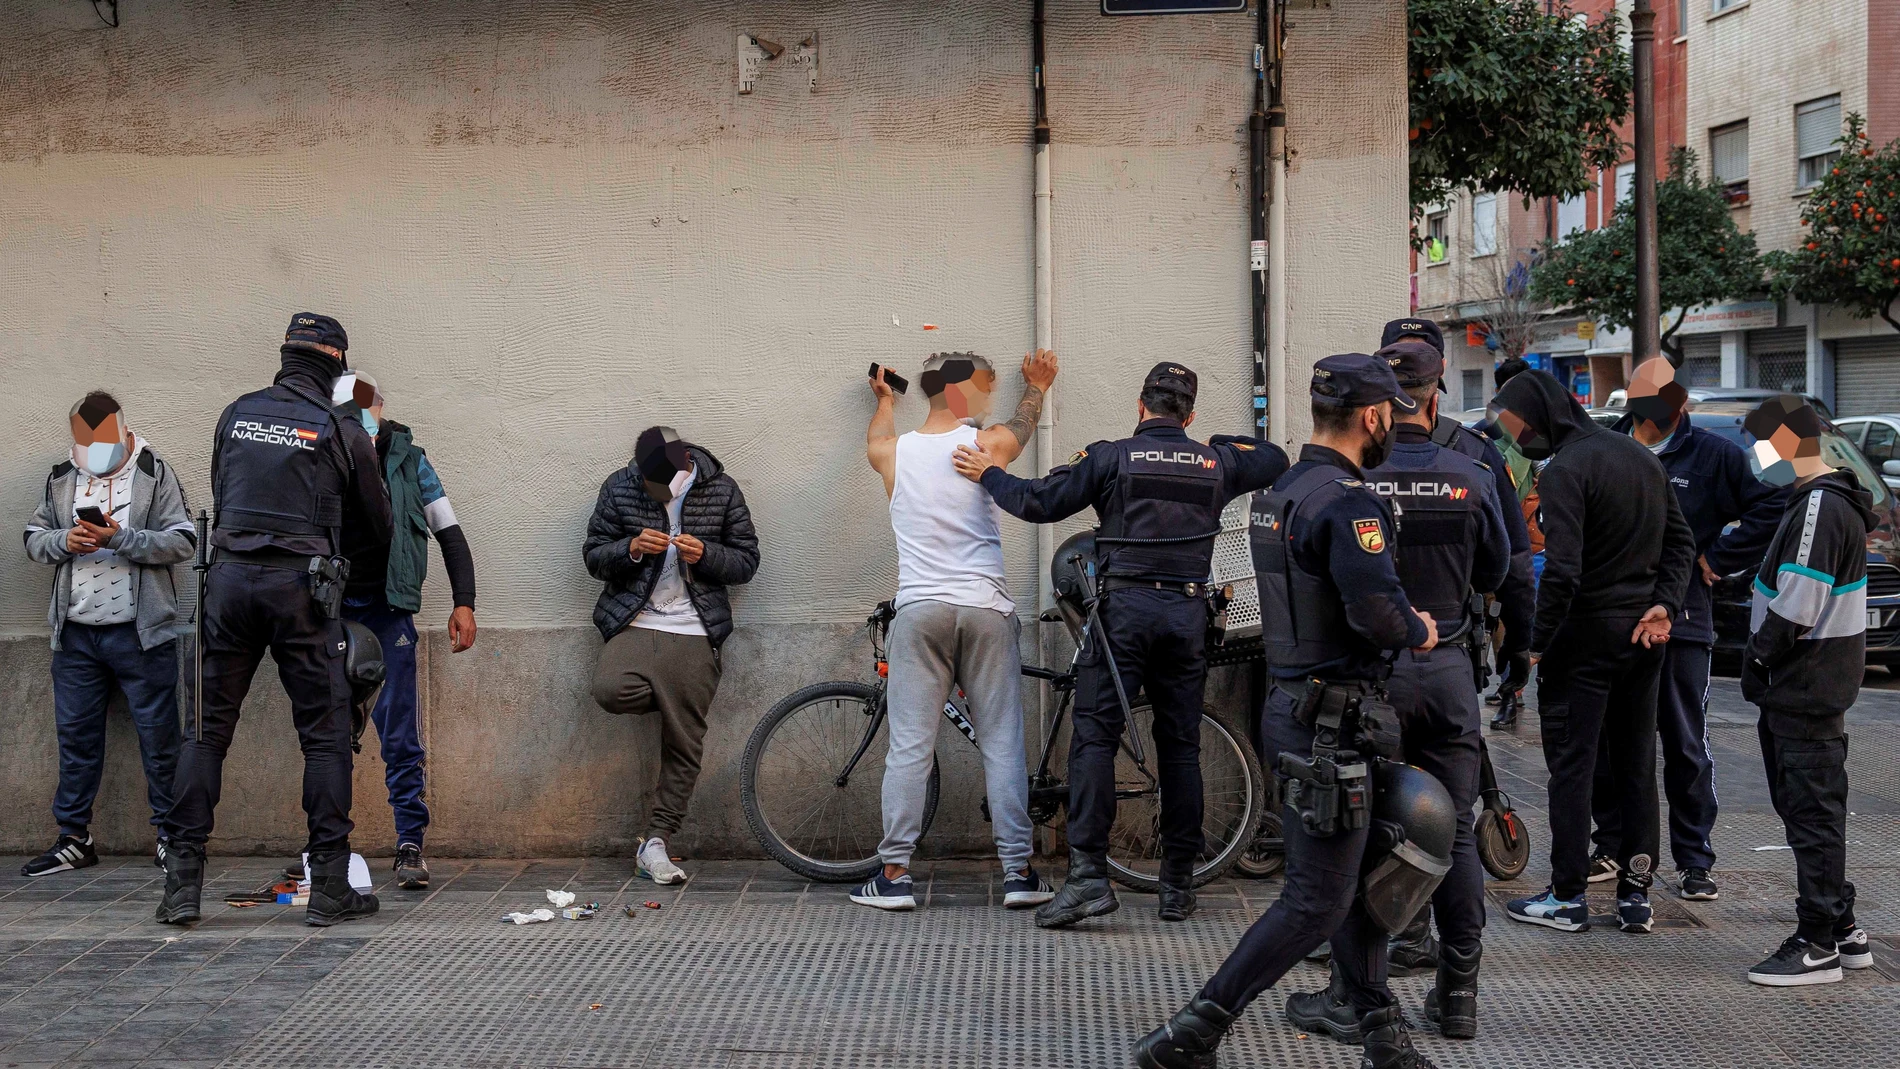 La Policía Nacional ha desplegado este jueves un amplio dispositivo contra la delincuencia en el barrio de Orriols de la ciudad de Valencia